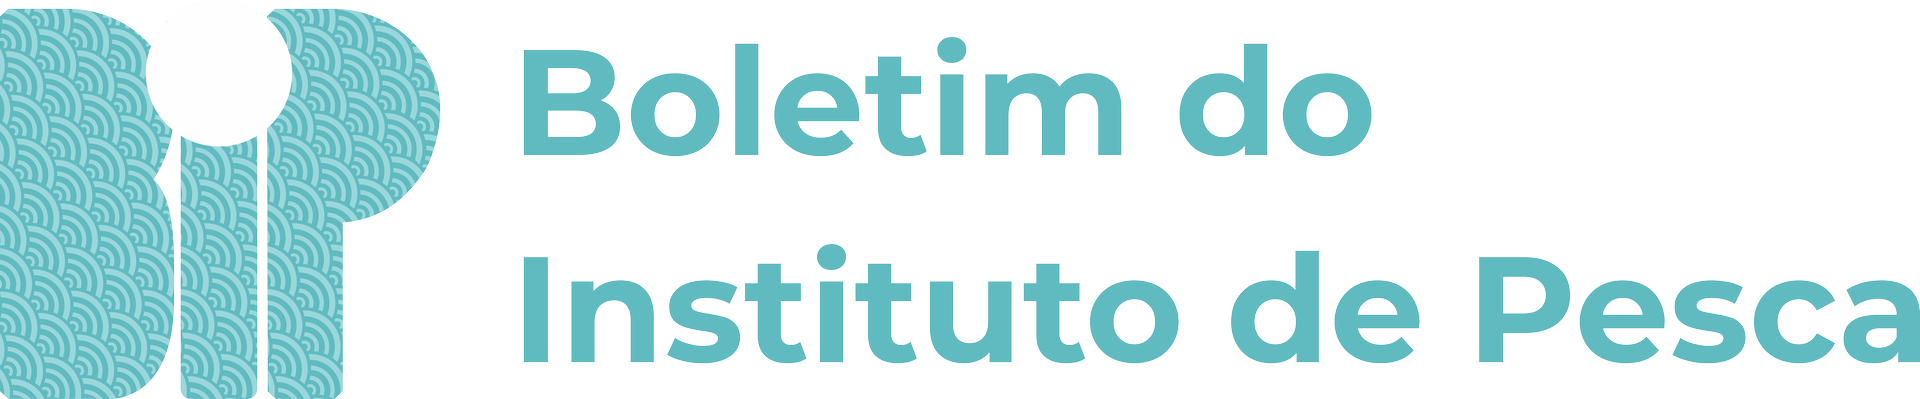 Logo_Boletim_do_Instituto_de_Pesca